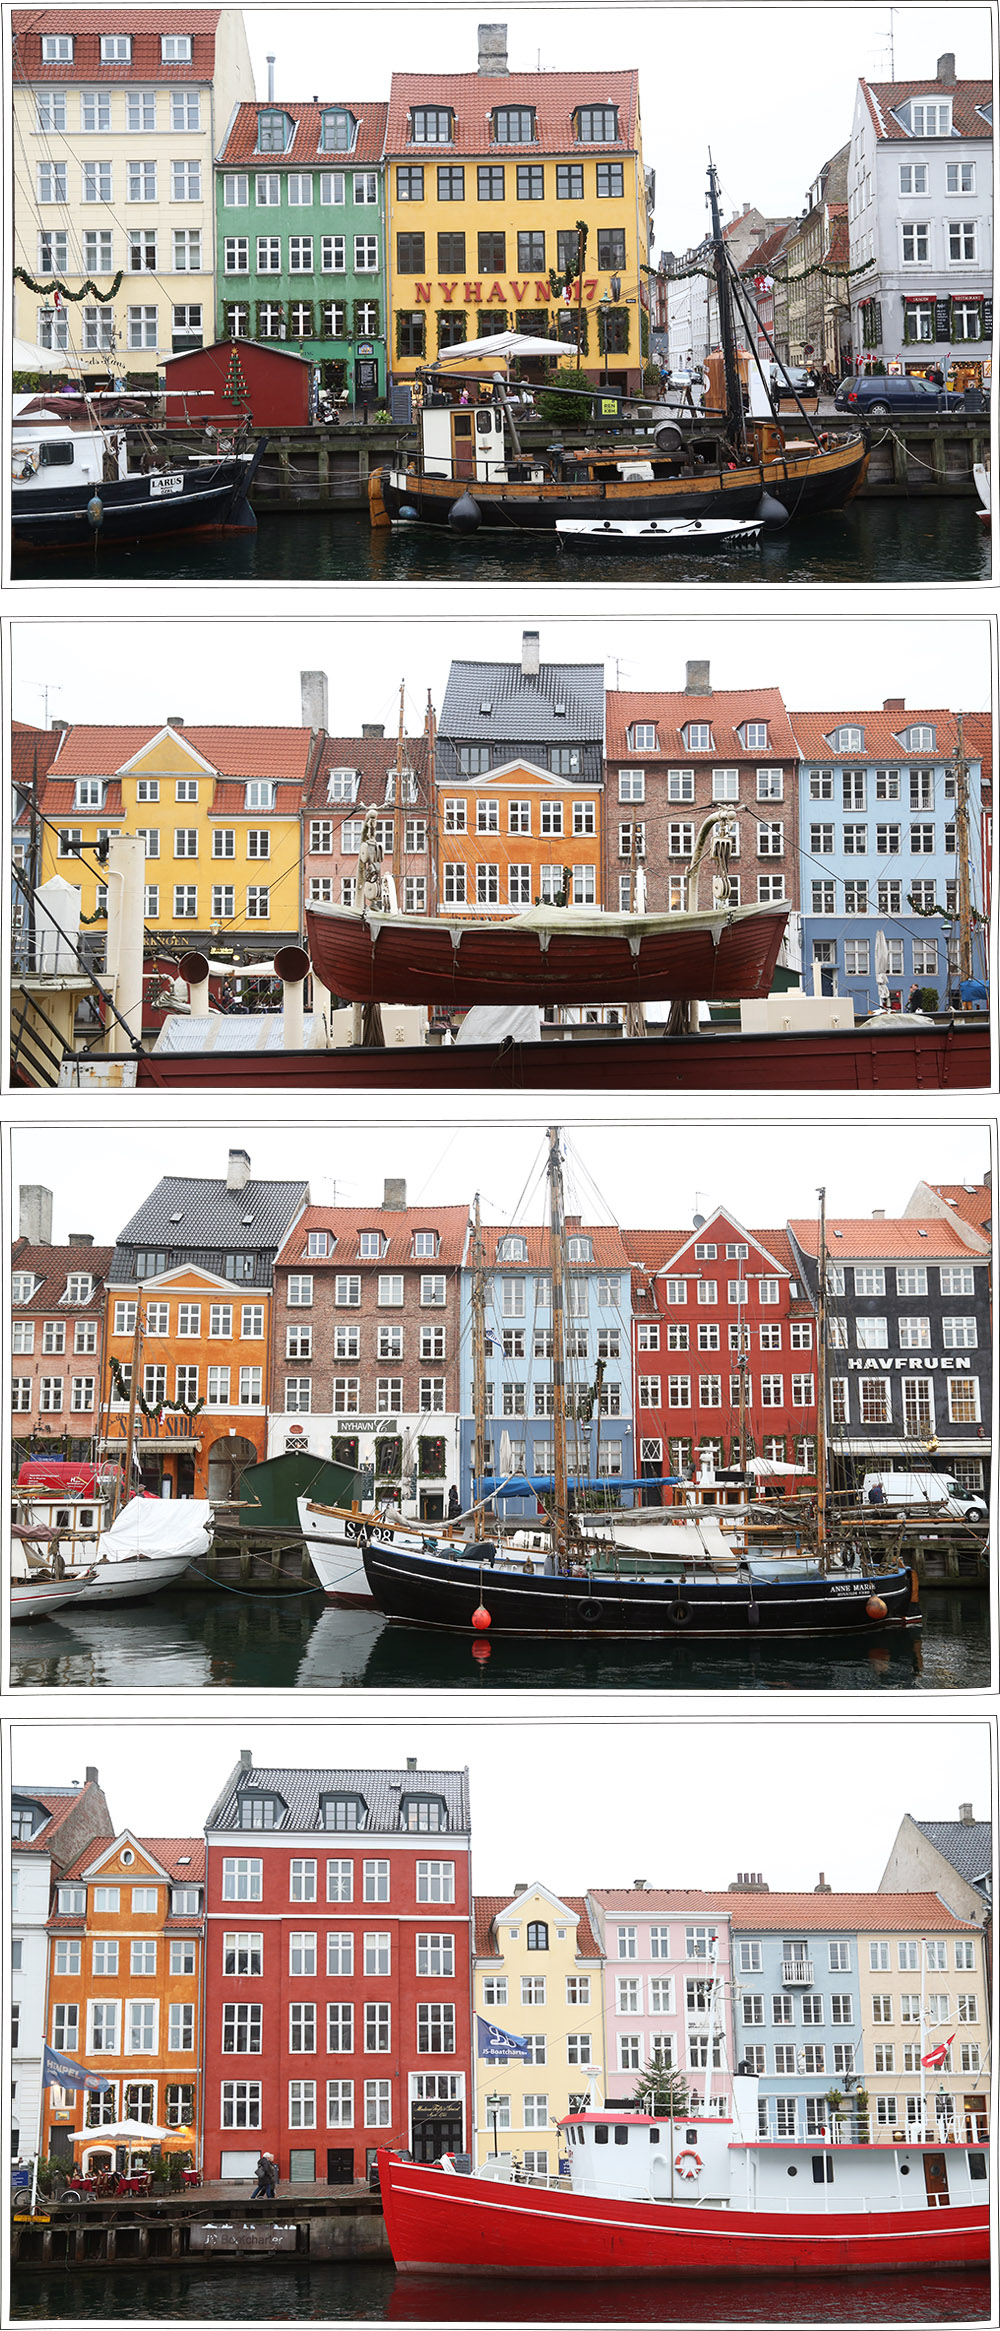 Week-end à Copenhague - Bonnes adresses - Carnet de voyage - Petits Béguins